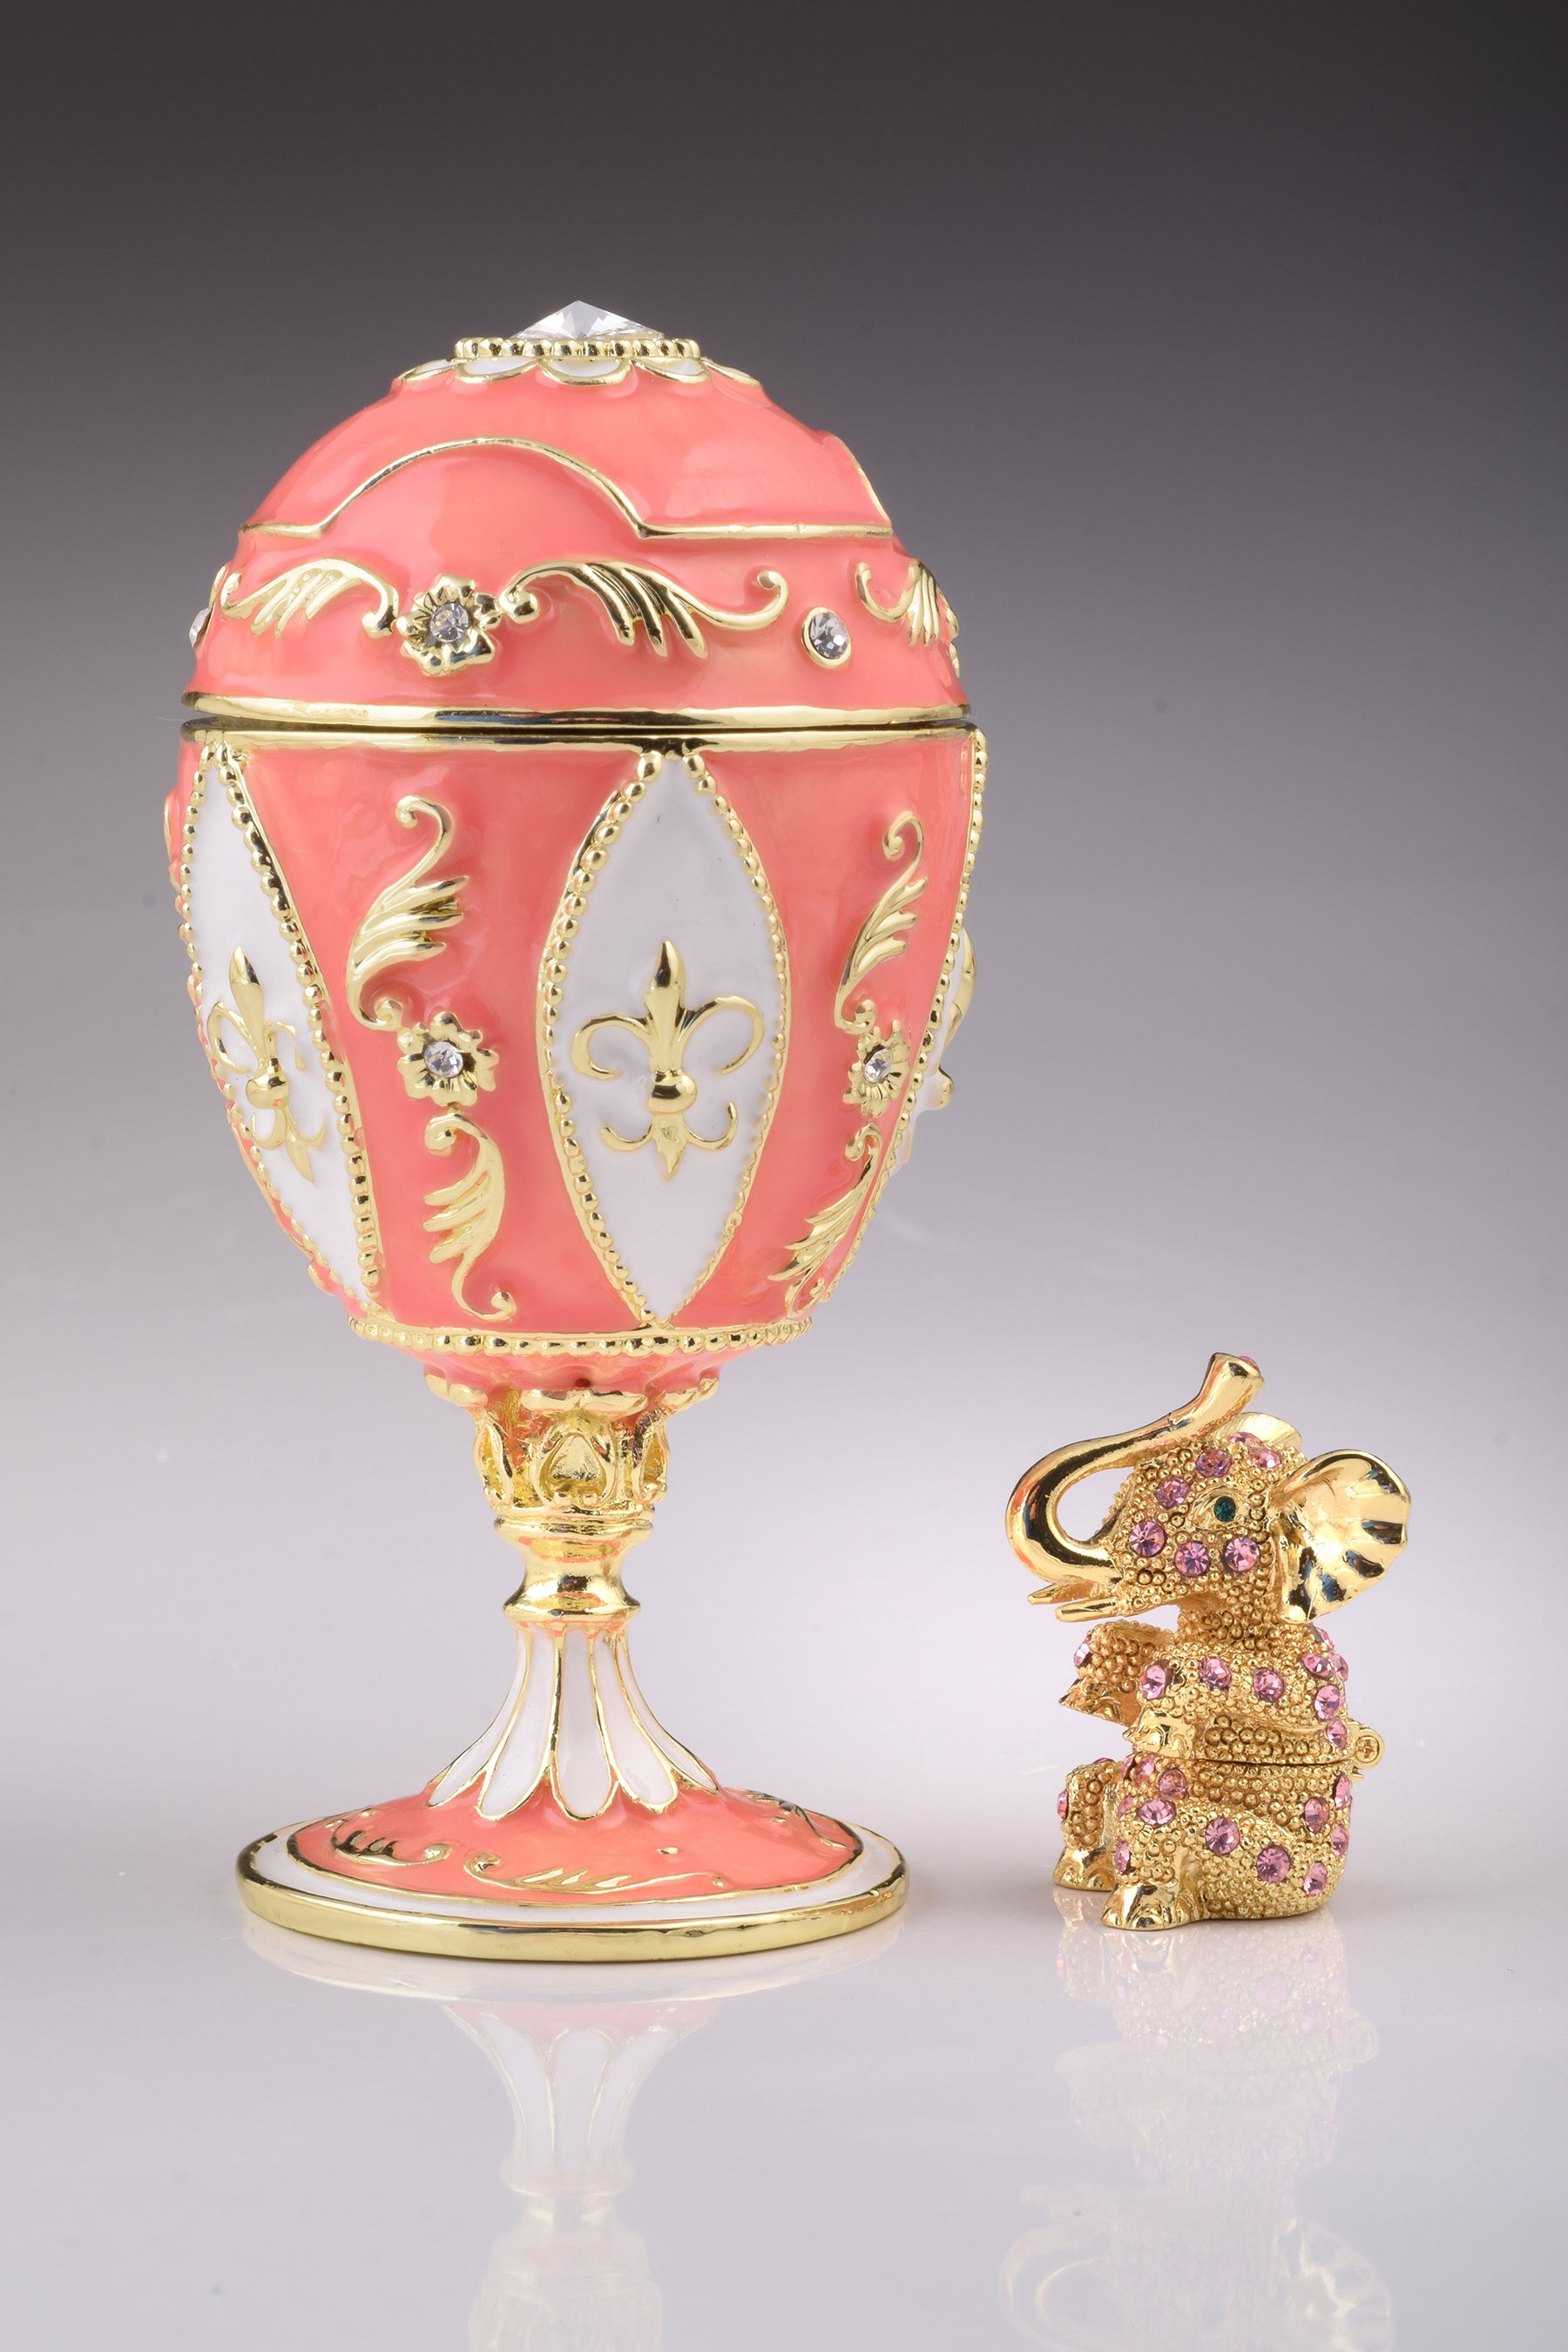 Oeuf de Fabergé rose avec éléphant à l'intérieur